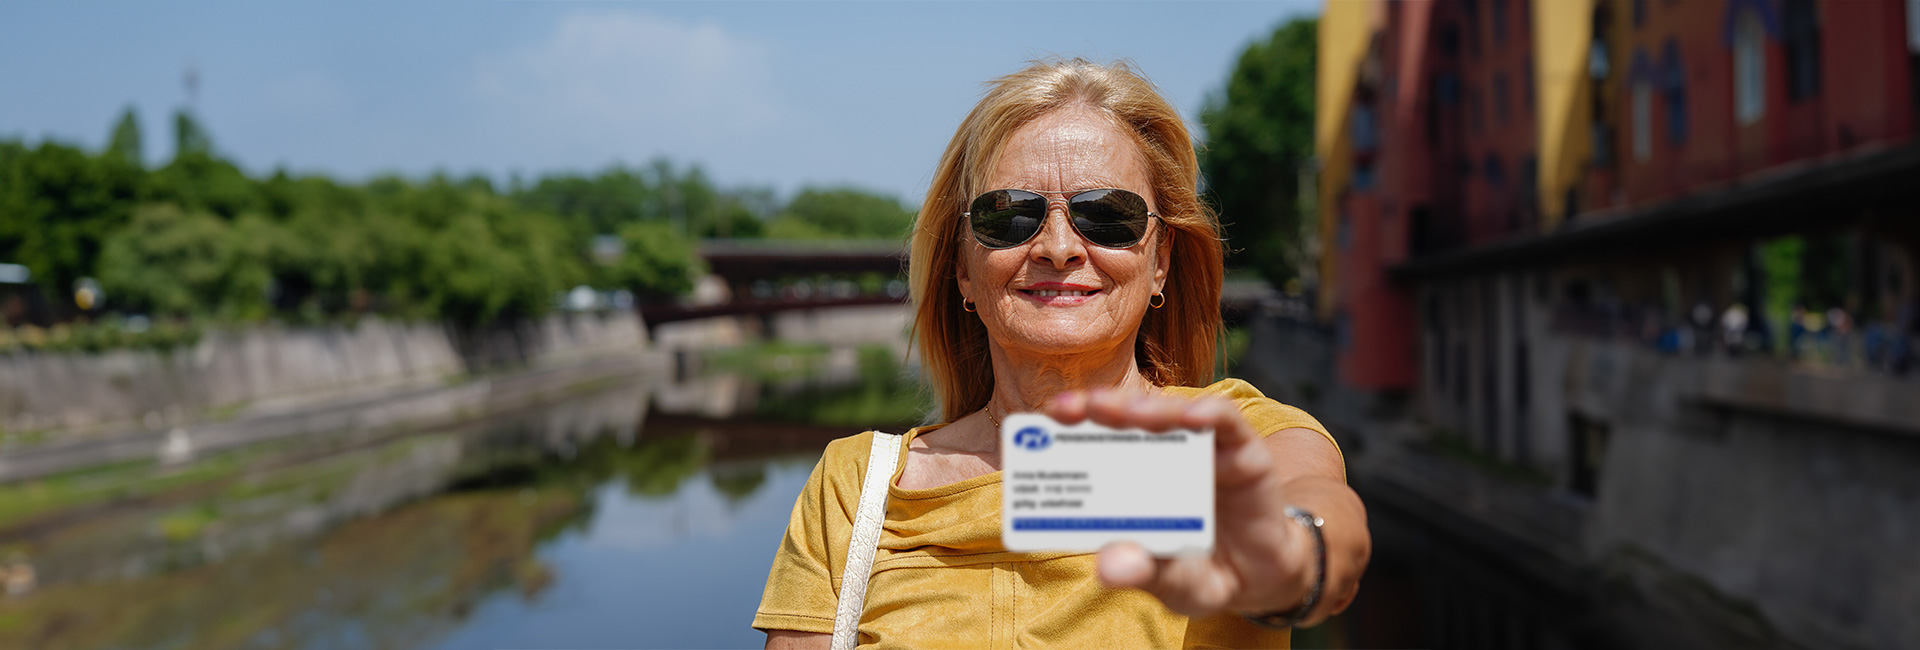 Ältere Frau mit Sonnebrille zeigt ihren Ausweis für Pensionist*innen im Scheckkartenformat